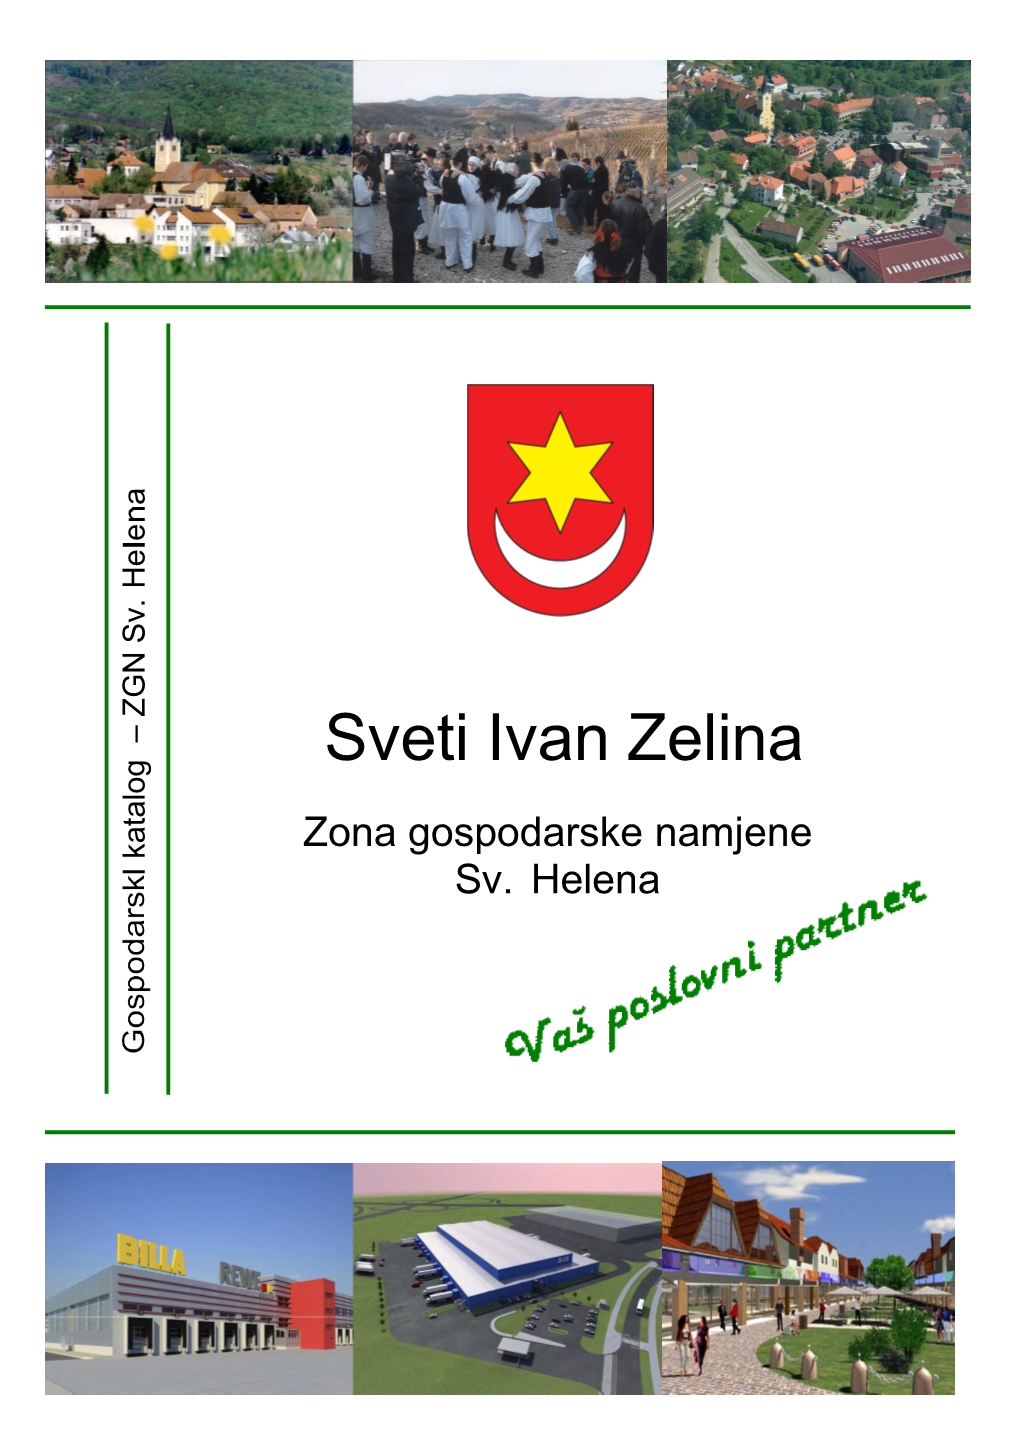 Grad Sveti Ivan Zelina Info Mapa Zone Gospodarske Namjene Sv